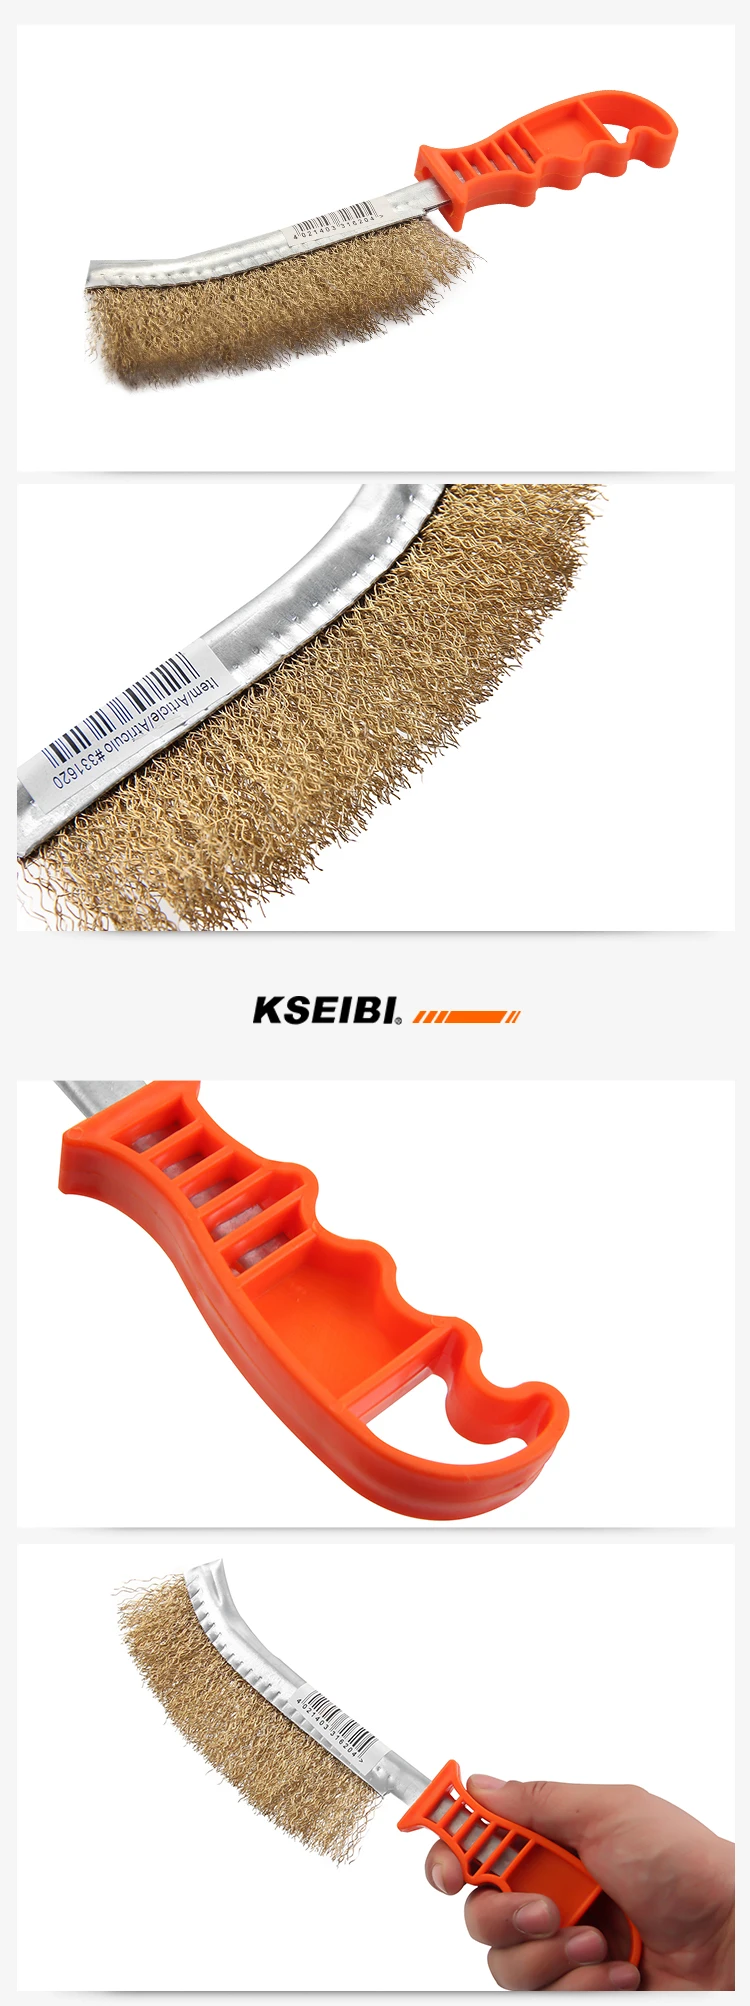 KSEIBI 331620 с латунным покрытием ручной проволоки кисти пластиковый, прочный Diy инструмент для удаления краски ржавчины стальной щетины провода скребок